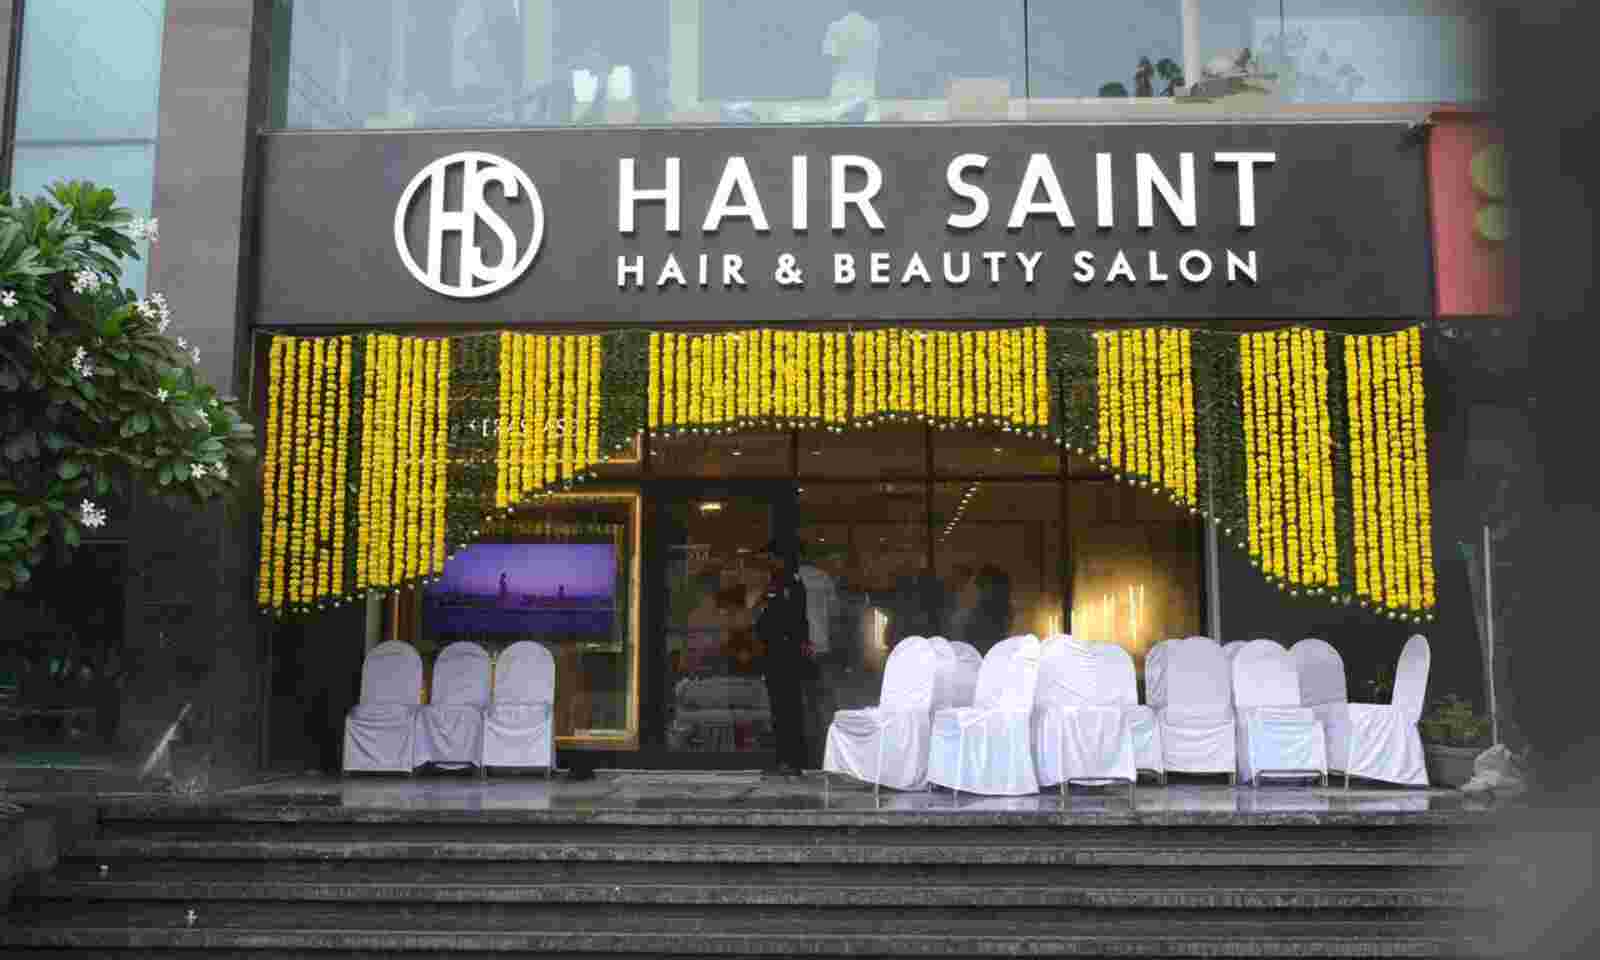 Luxurious Hair Saint salon opened in Vadodara